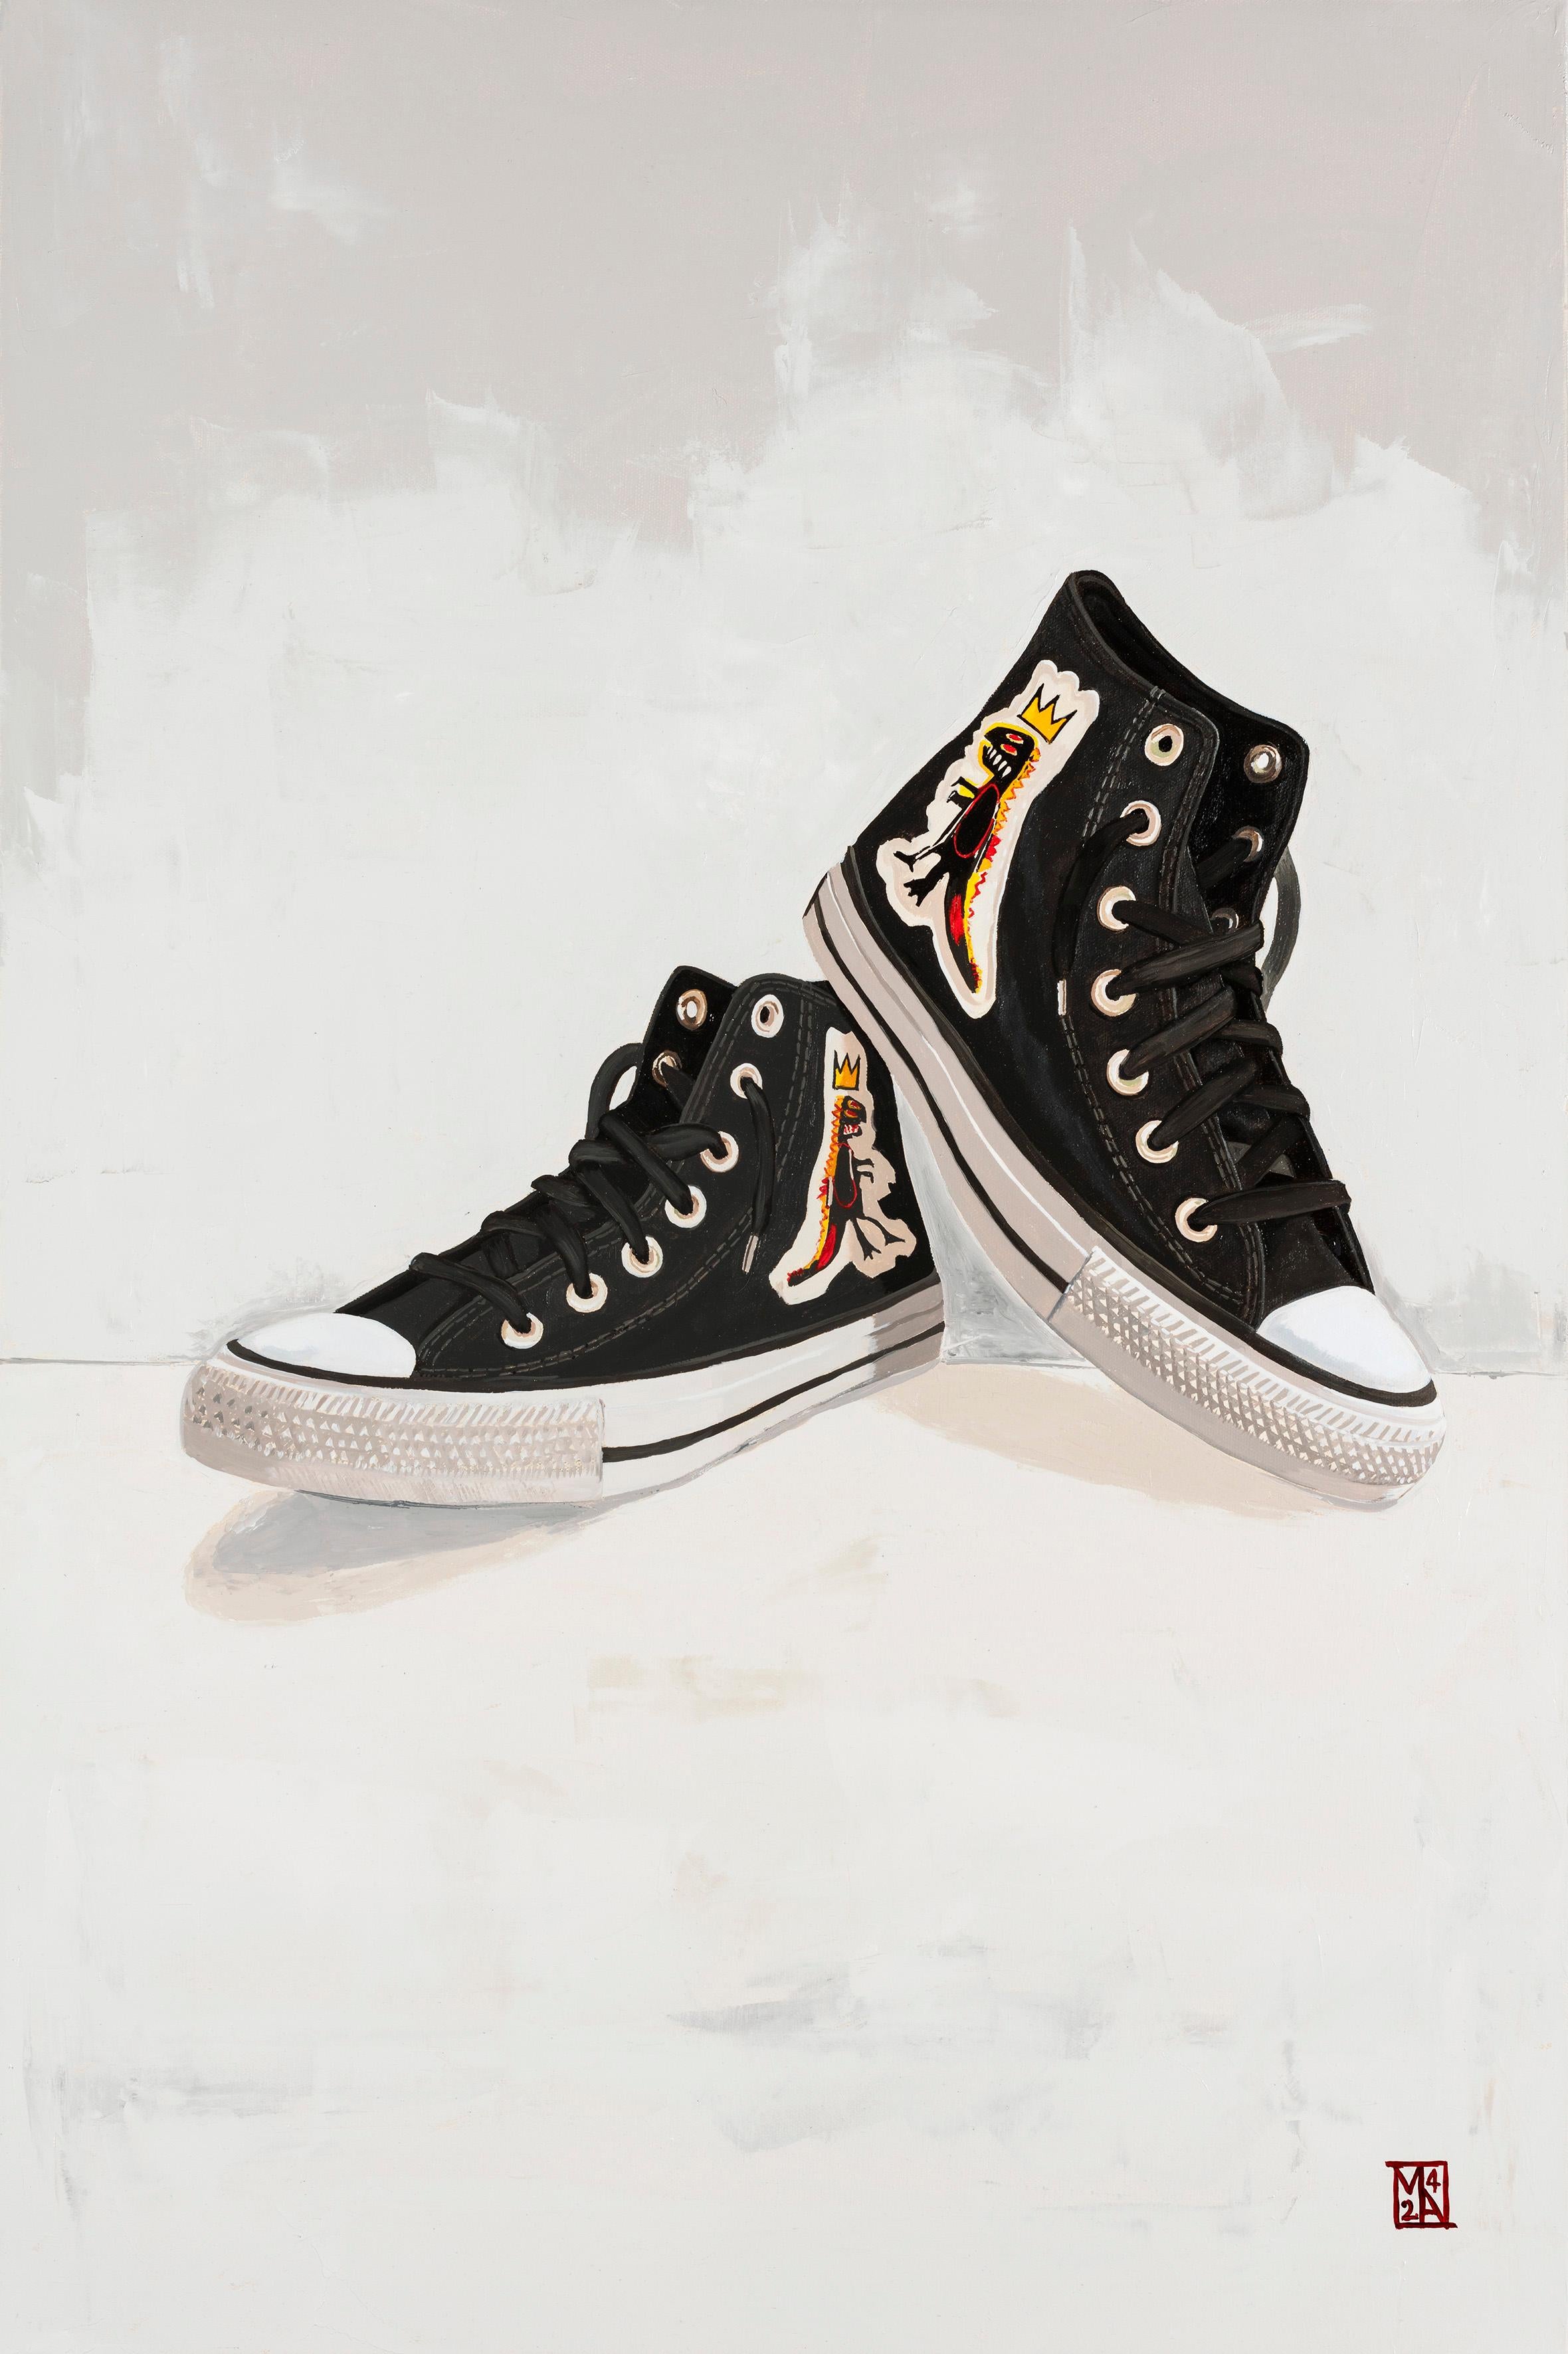 La sixième d'une série de Converse Chuck Taylor Basquiat usées. Cette fois-ci avec une paire de baskets Converse Basquiat. Intitulées "Life Imitates Art III", ces baskets représentent le dinosaure classique de Basquiat portant sur la tête la